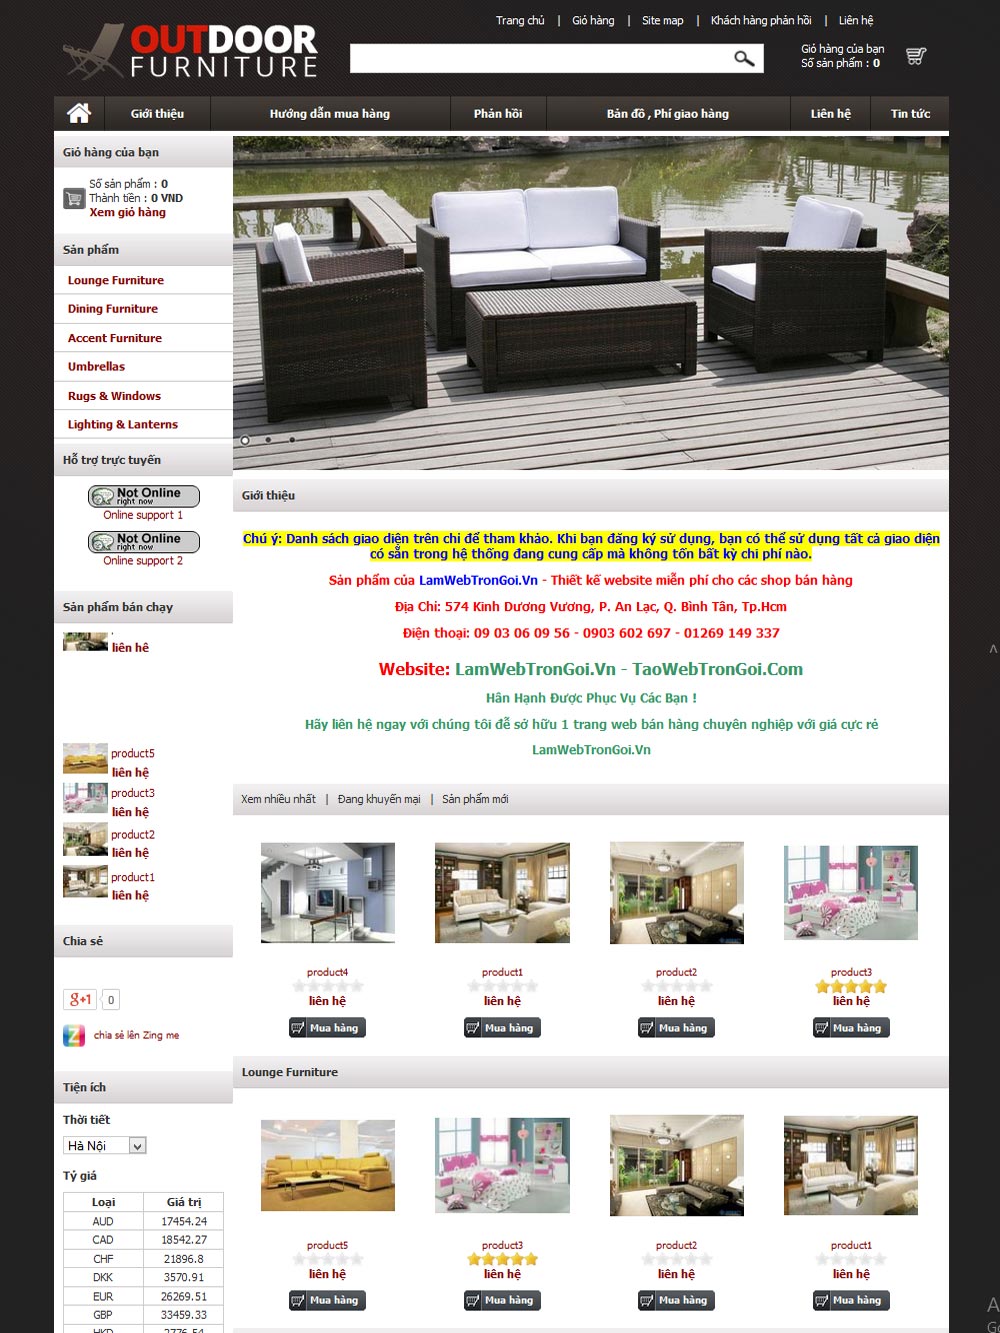 TaoWebTronGoi.Com. Thiết kế web Hơn 300 giao diện cực đẹp. Giá chỉ bằng 3 ly cafe ! - 17